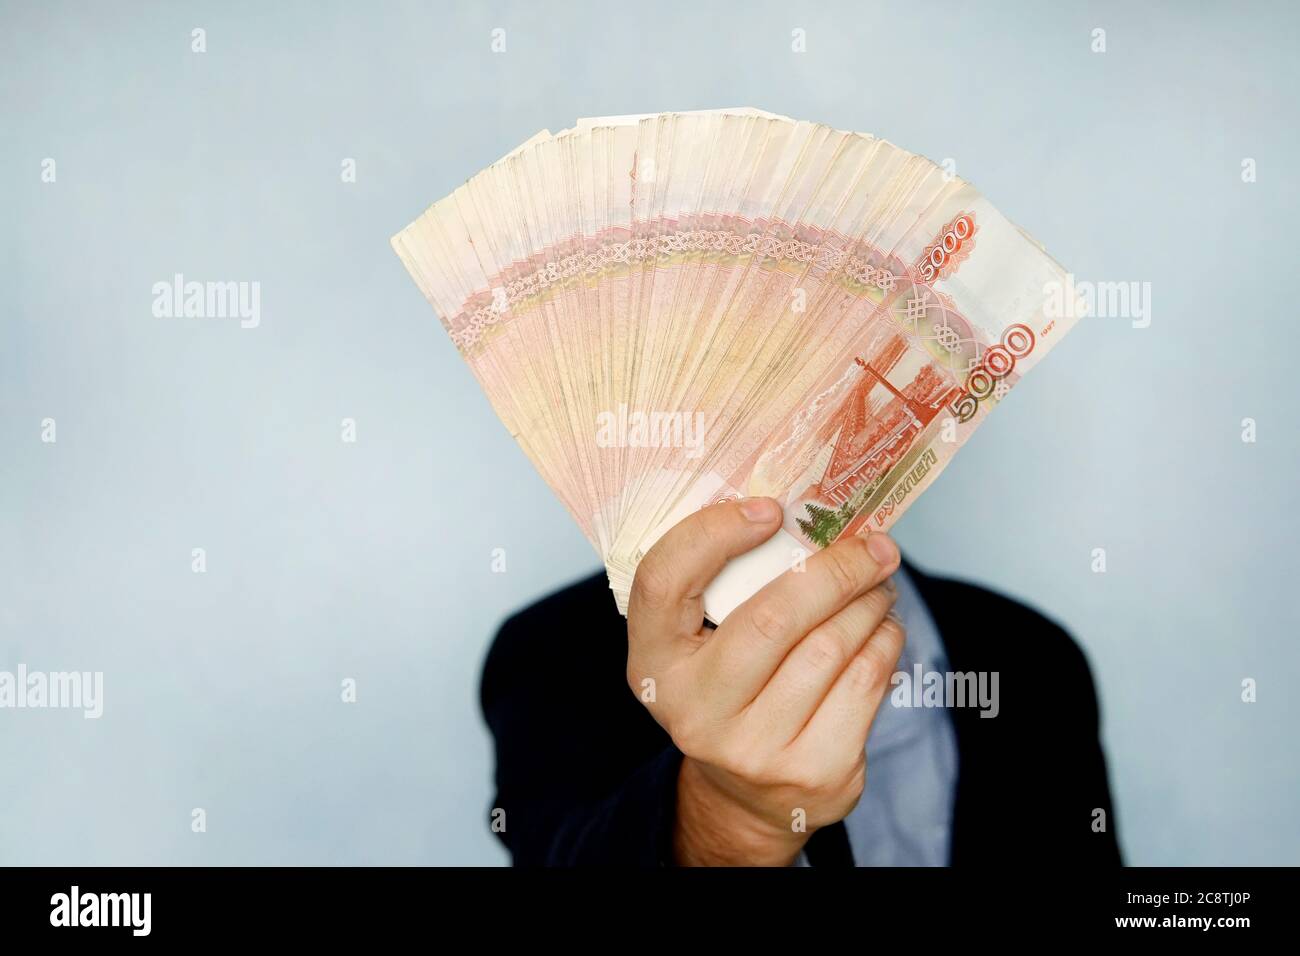 Uomo d'affari che conta soldi, valuta russa ruble concetti finanziari e ricchi Foto Stock